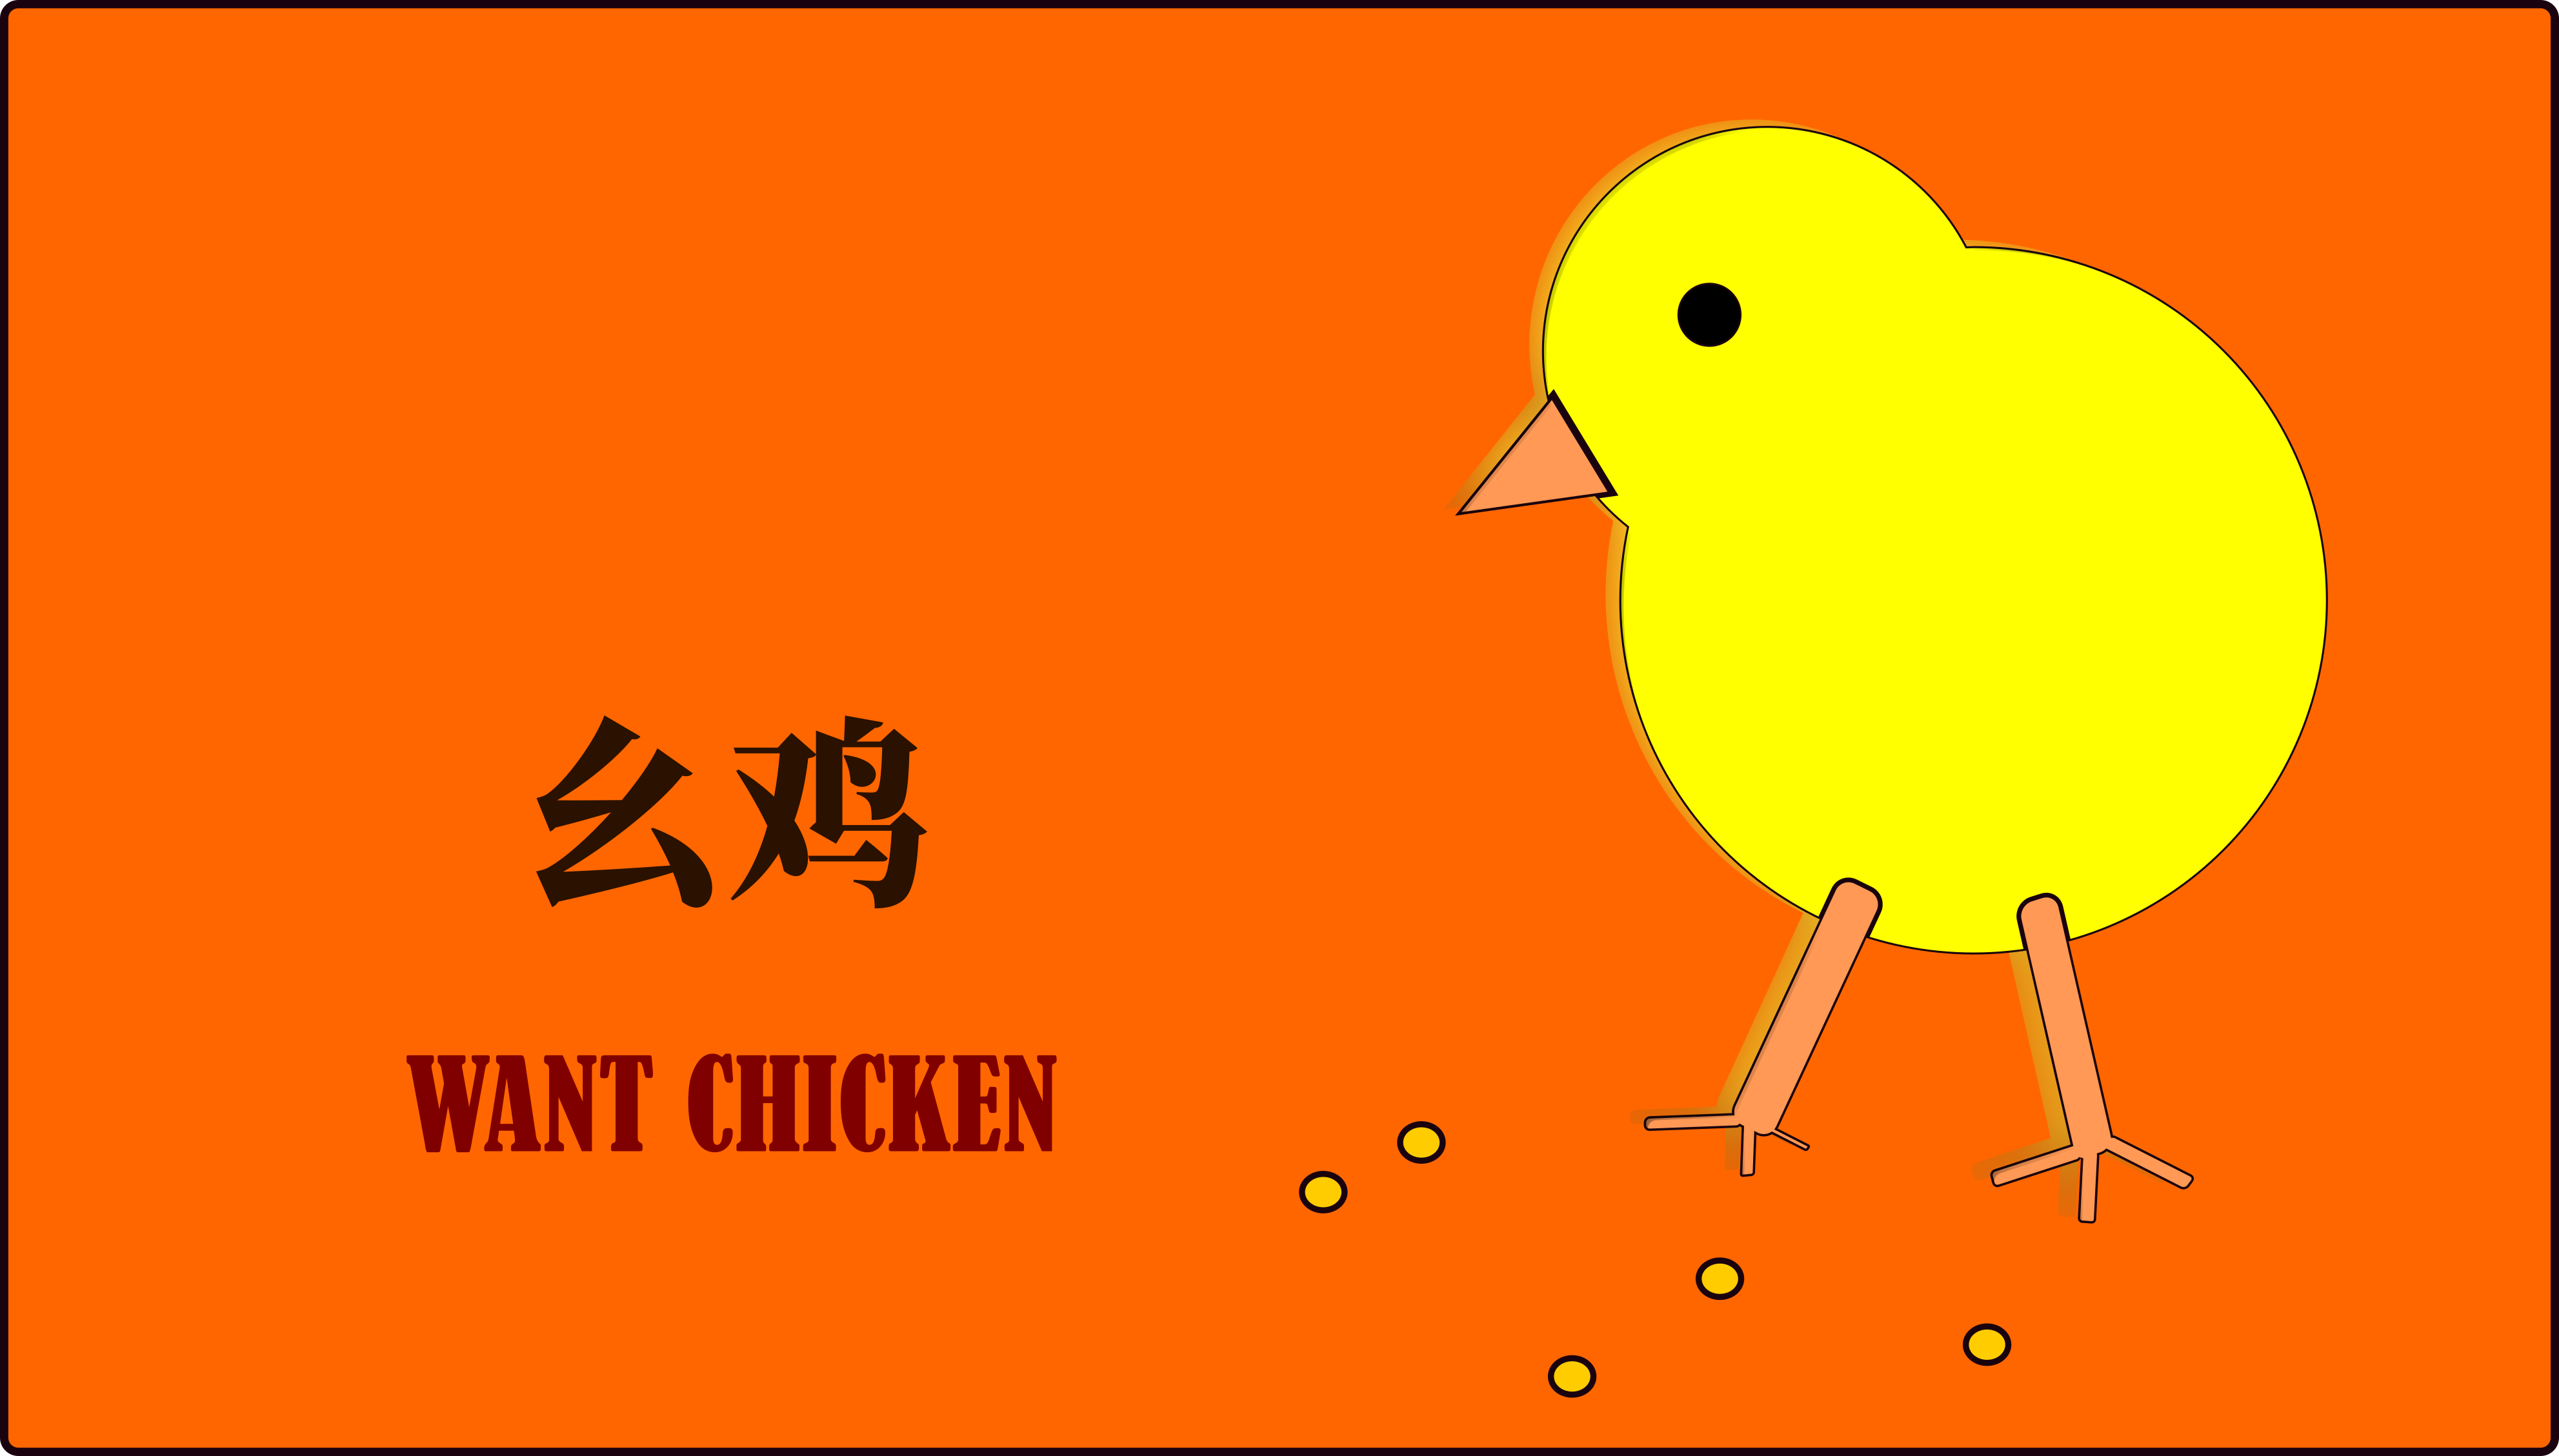 General 3966x2257 chickens orange background digital art simple background minimalism